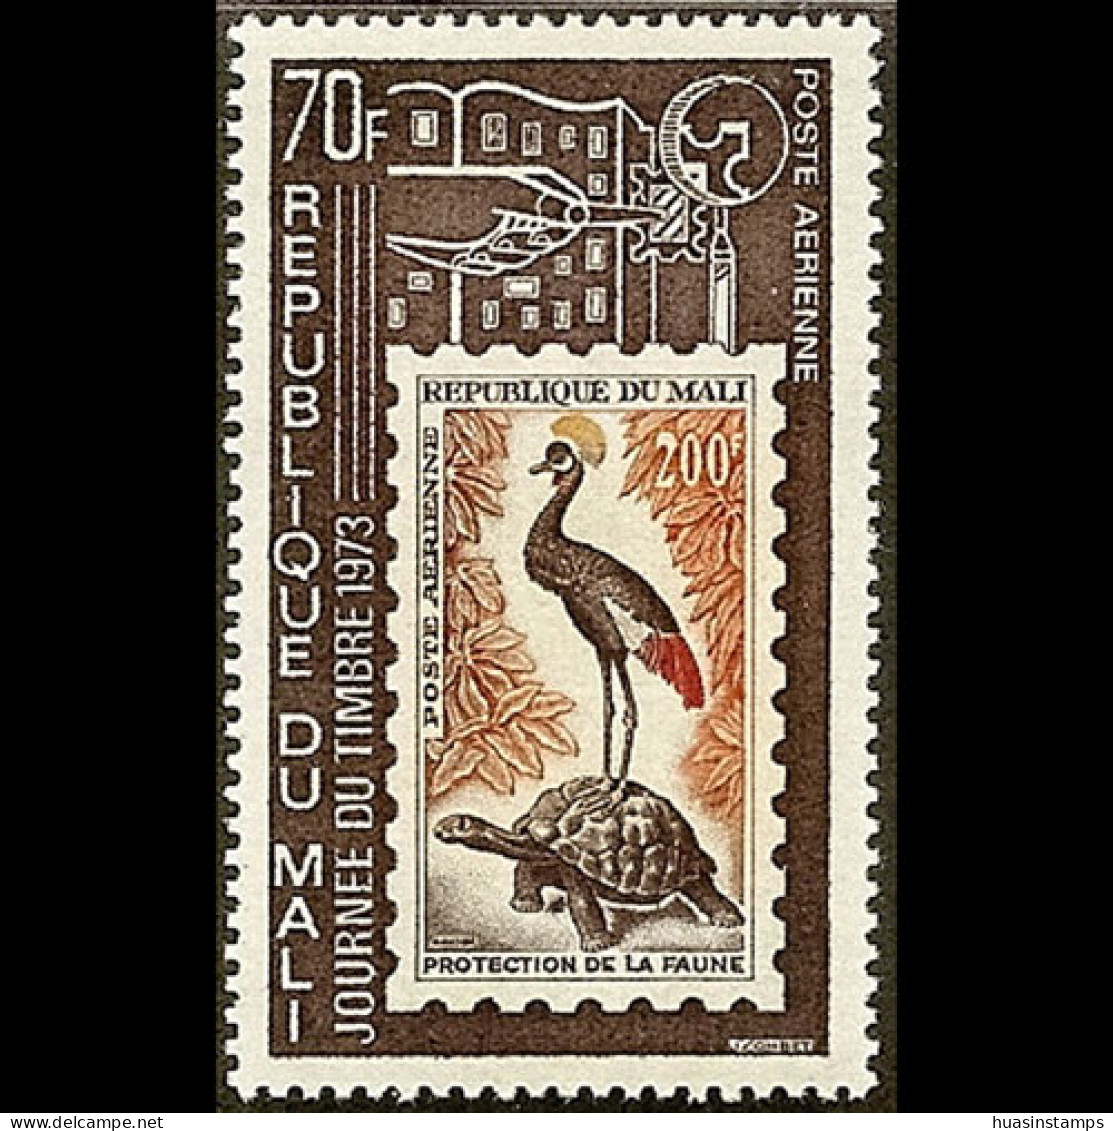 MALI 1973 - Scott# C175 Stamp Day Set Of 1 MNH - Mali (1959-...)